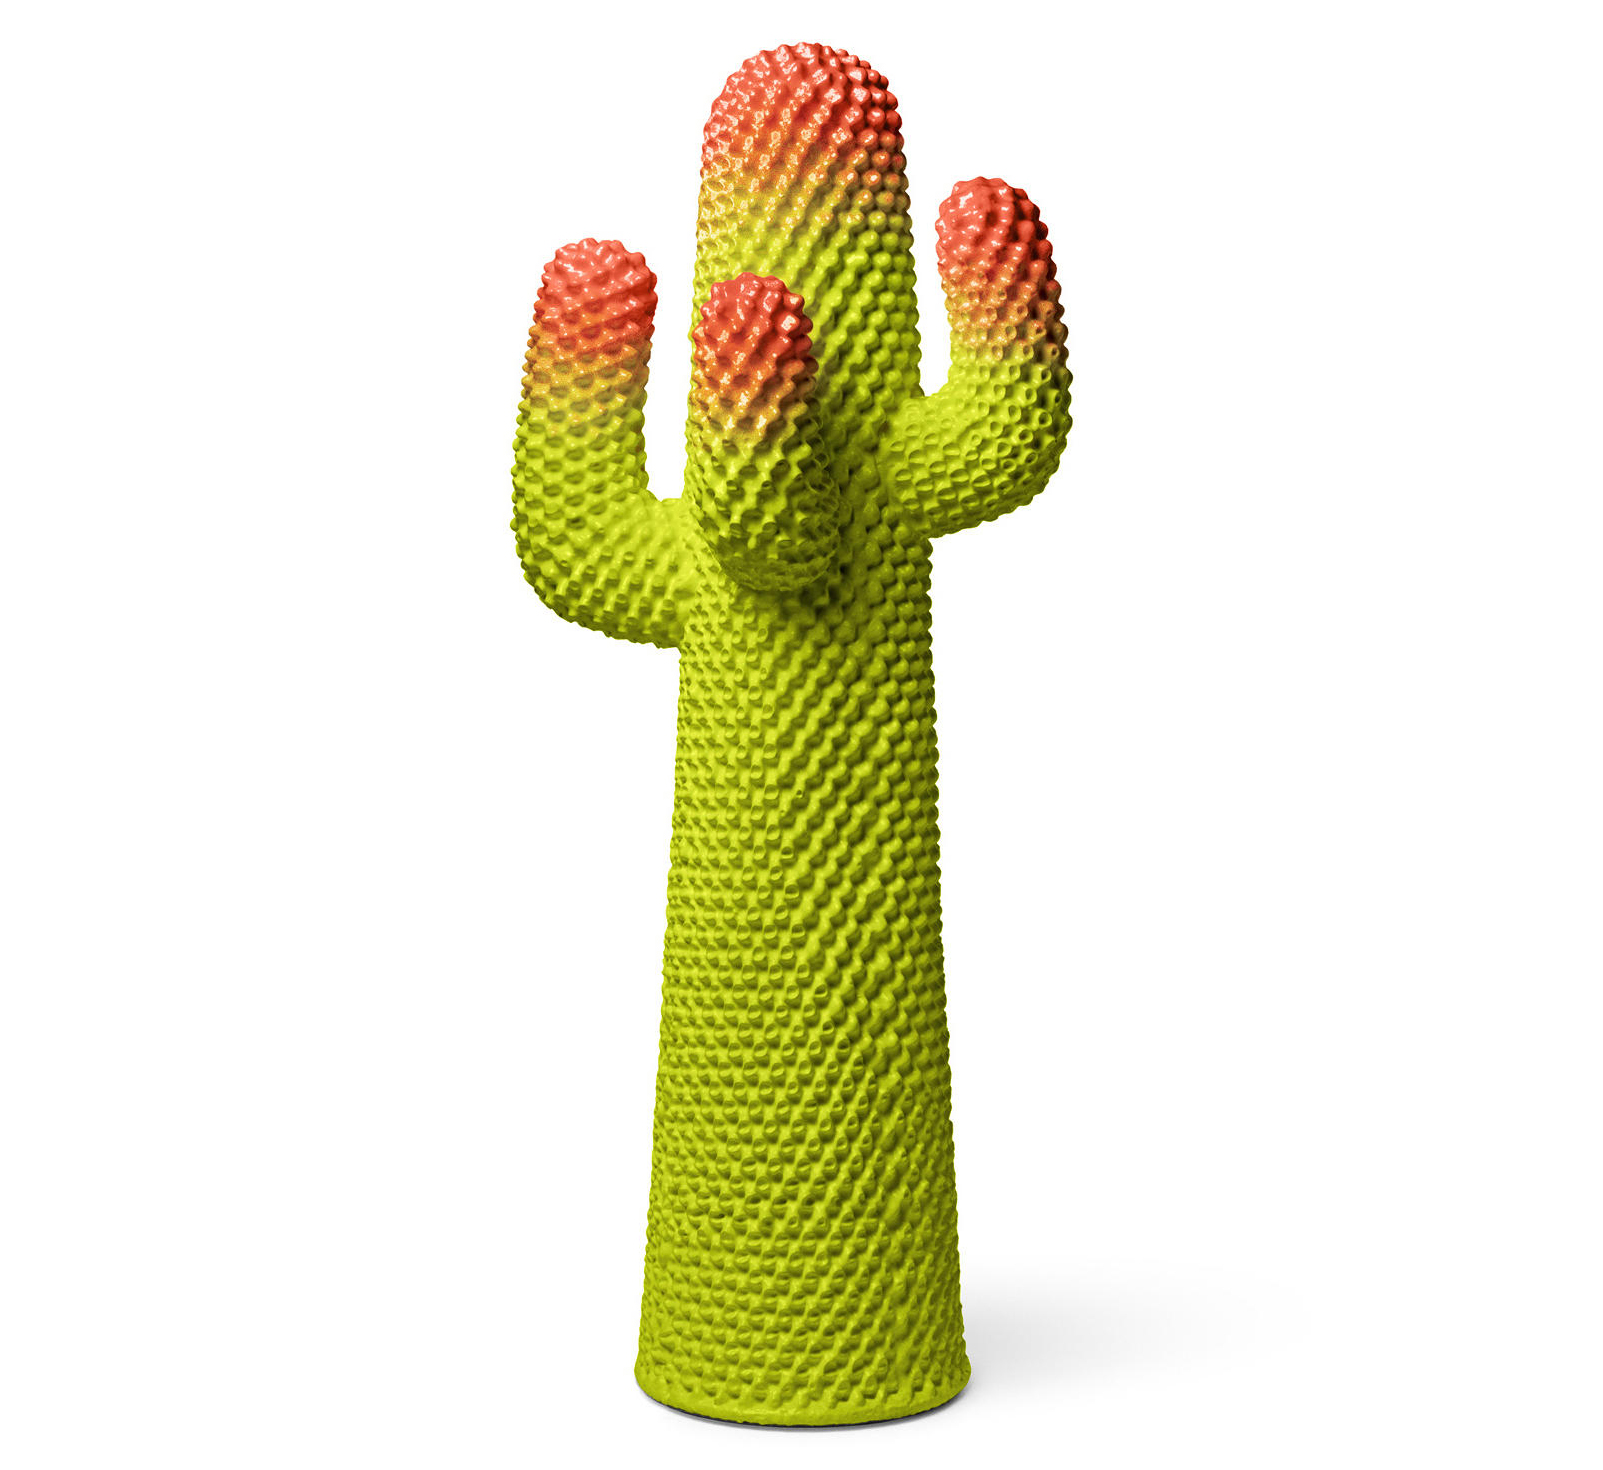 Cactus GÉANT VERT METACACTUS 170cm - Objet déco ou porte-manteau original Gufram